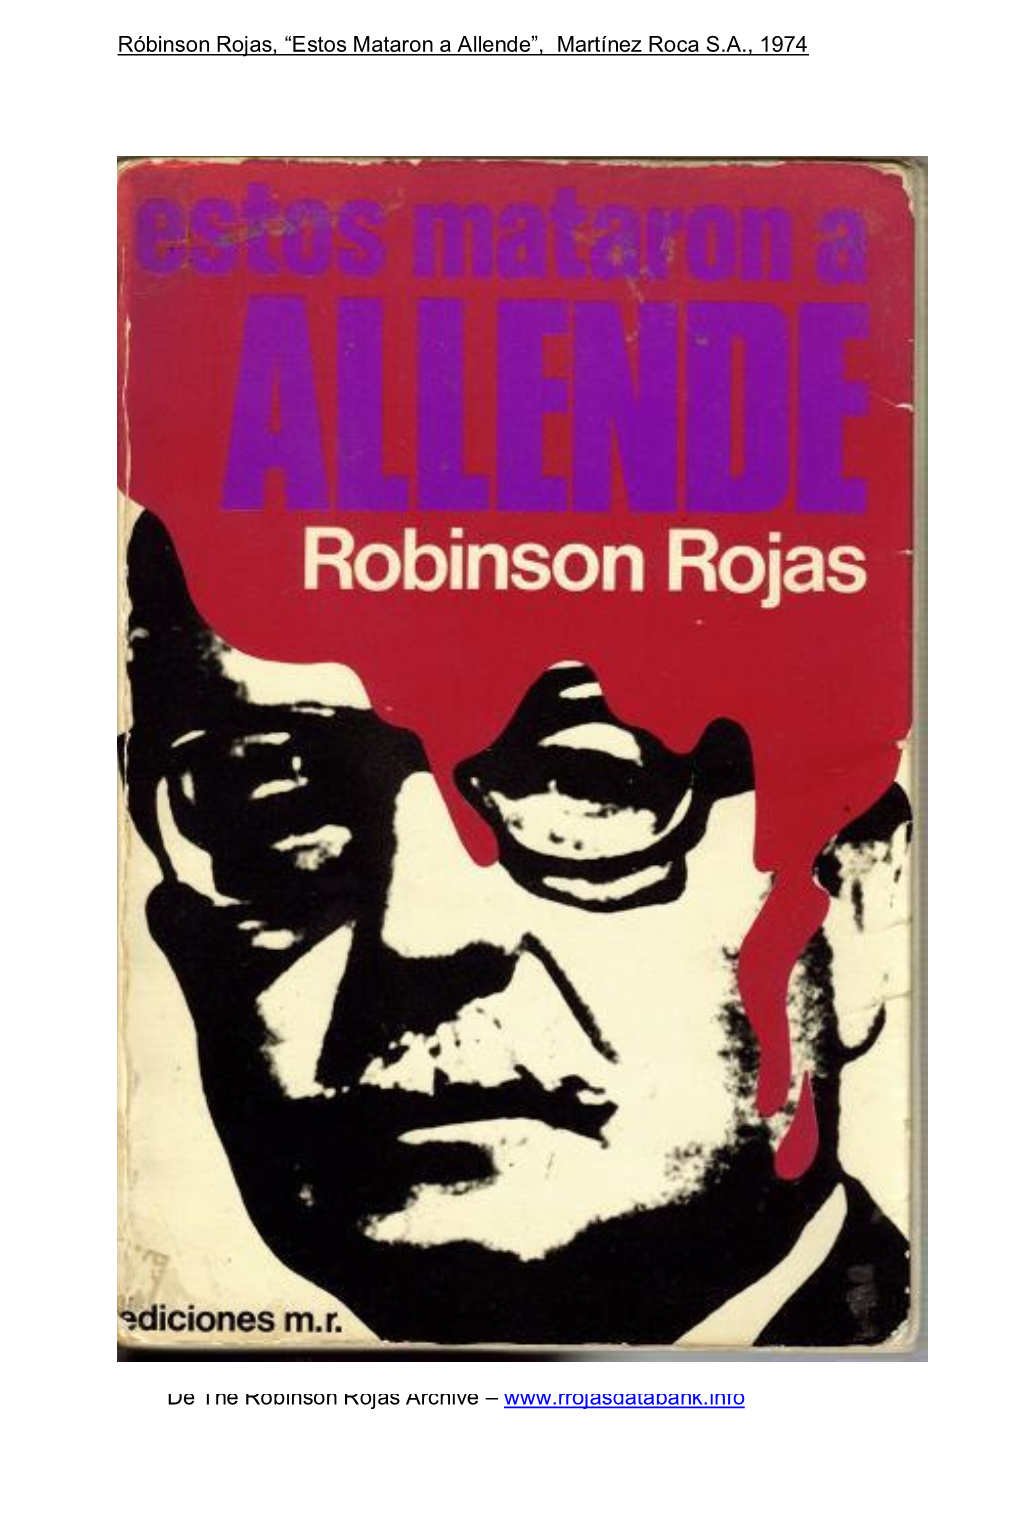 Estos Mataron a Allende”, Martínez Roca S.A., 1974